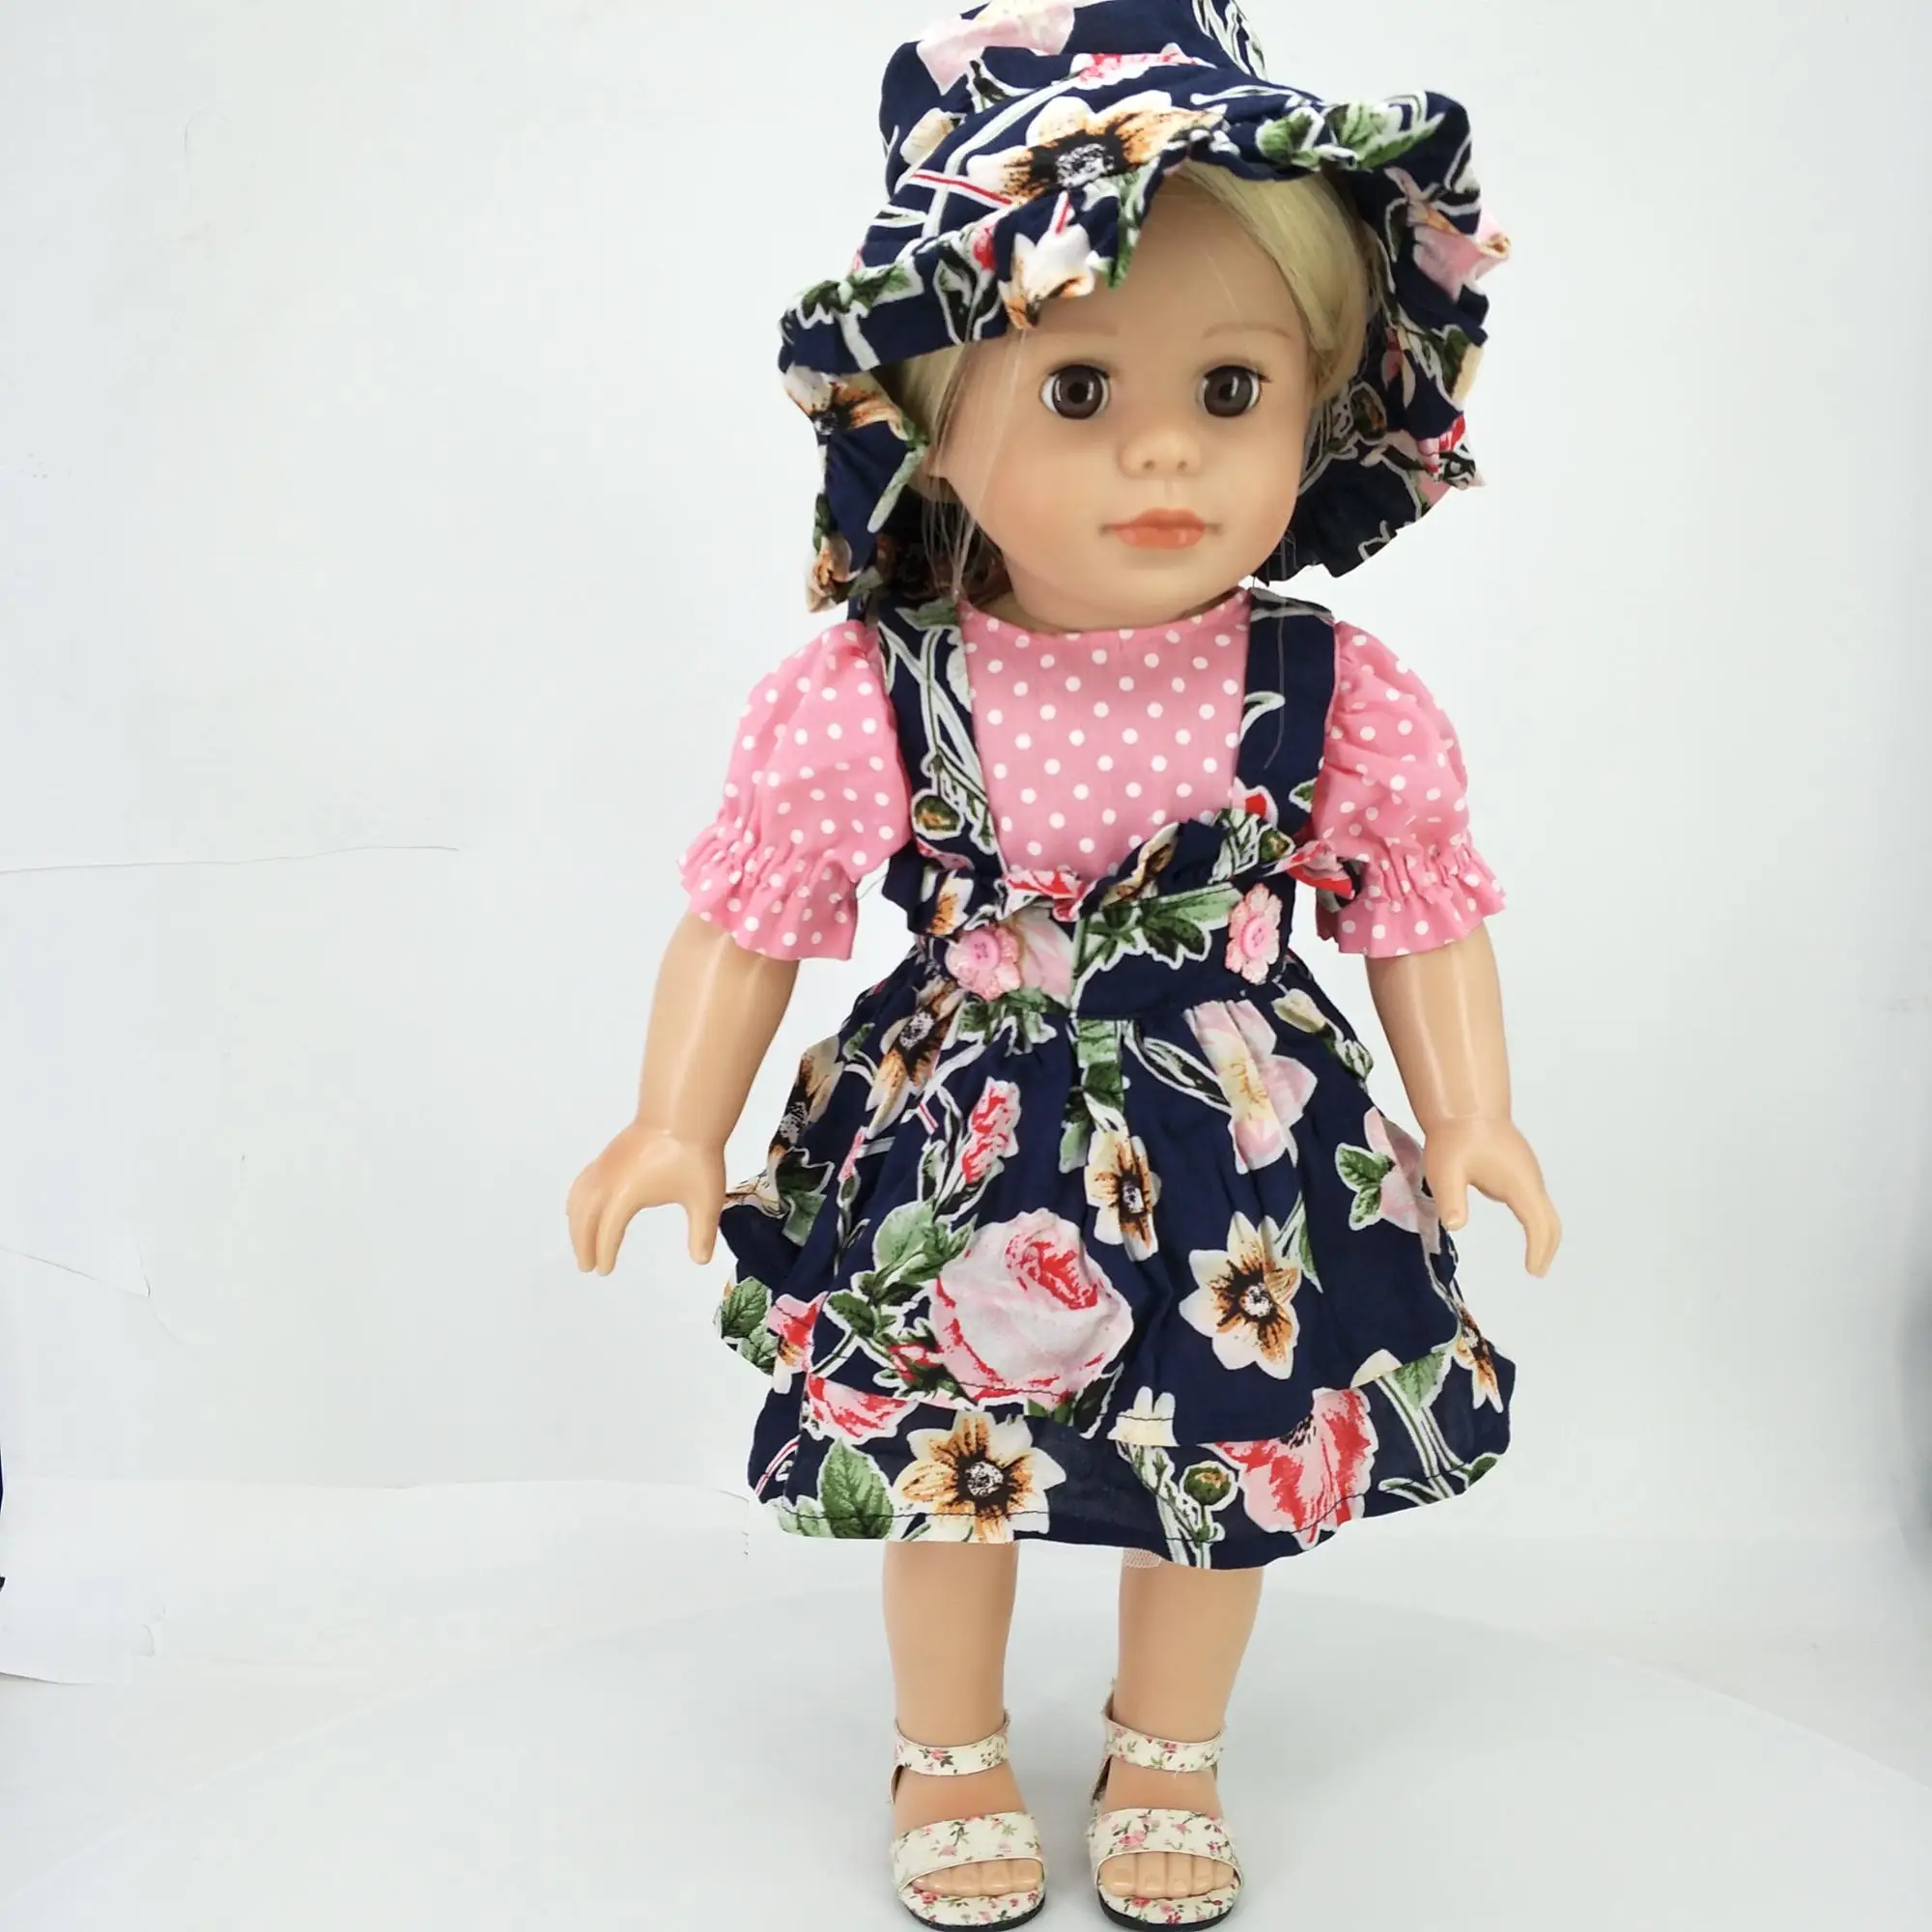 赤ちゃんの子供のためのファッション18インチアメリカの女の子の人形の服 Buy 18インチの人形の服 アメリカンガール人形の服 高品質人形服 Product On Alibaba Com